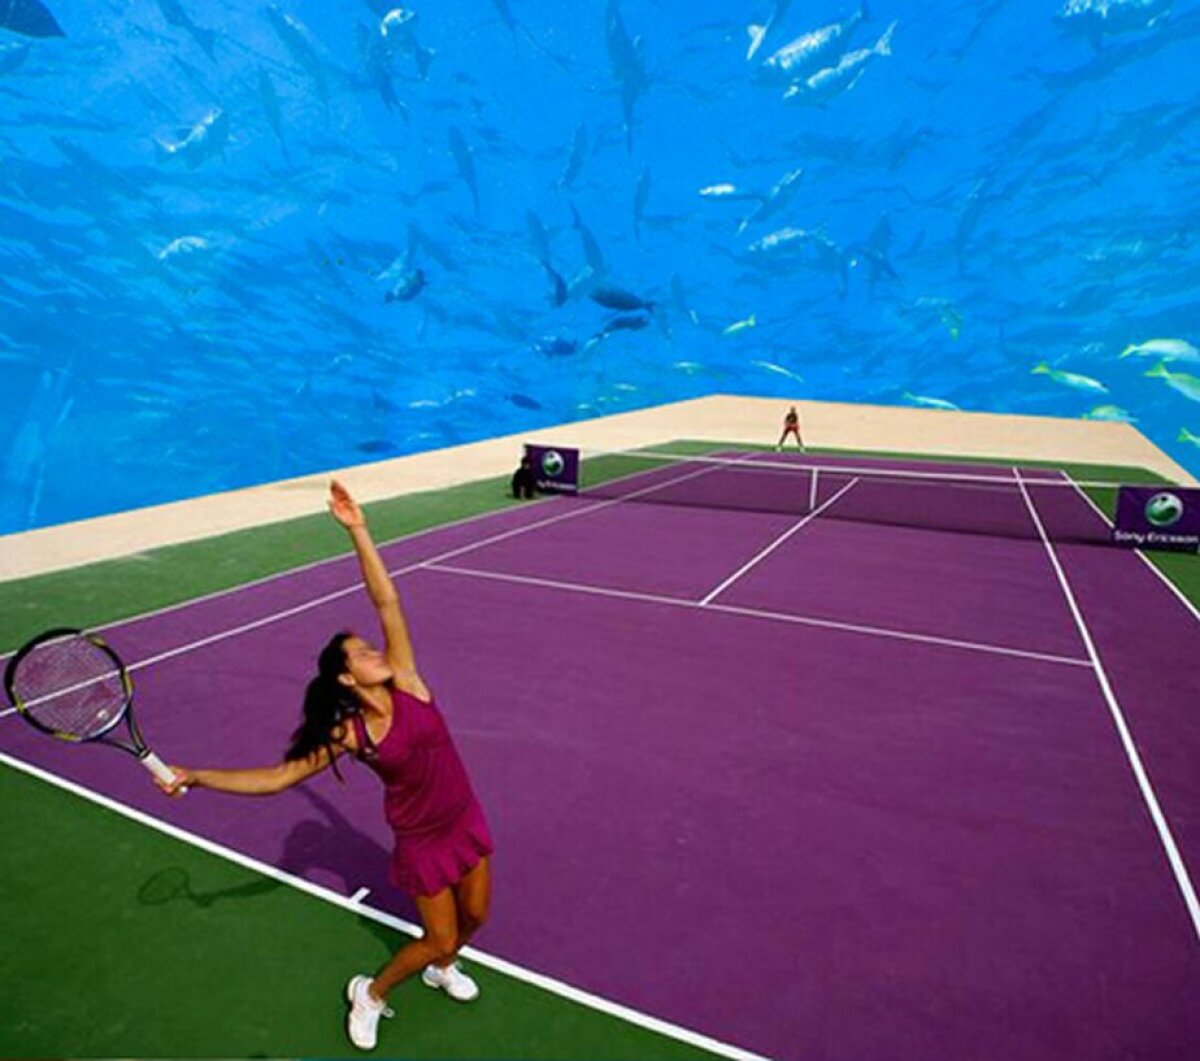 GALERIE FOTO Invovația începutului de secol » Imagini incredibile: unde se va juca tenis în Dubai